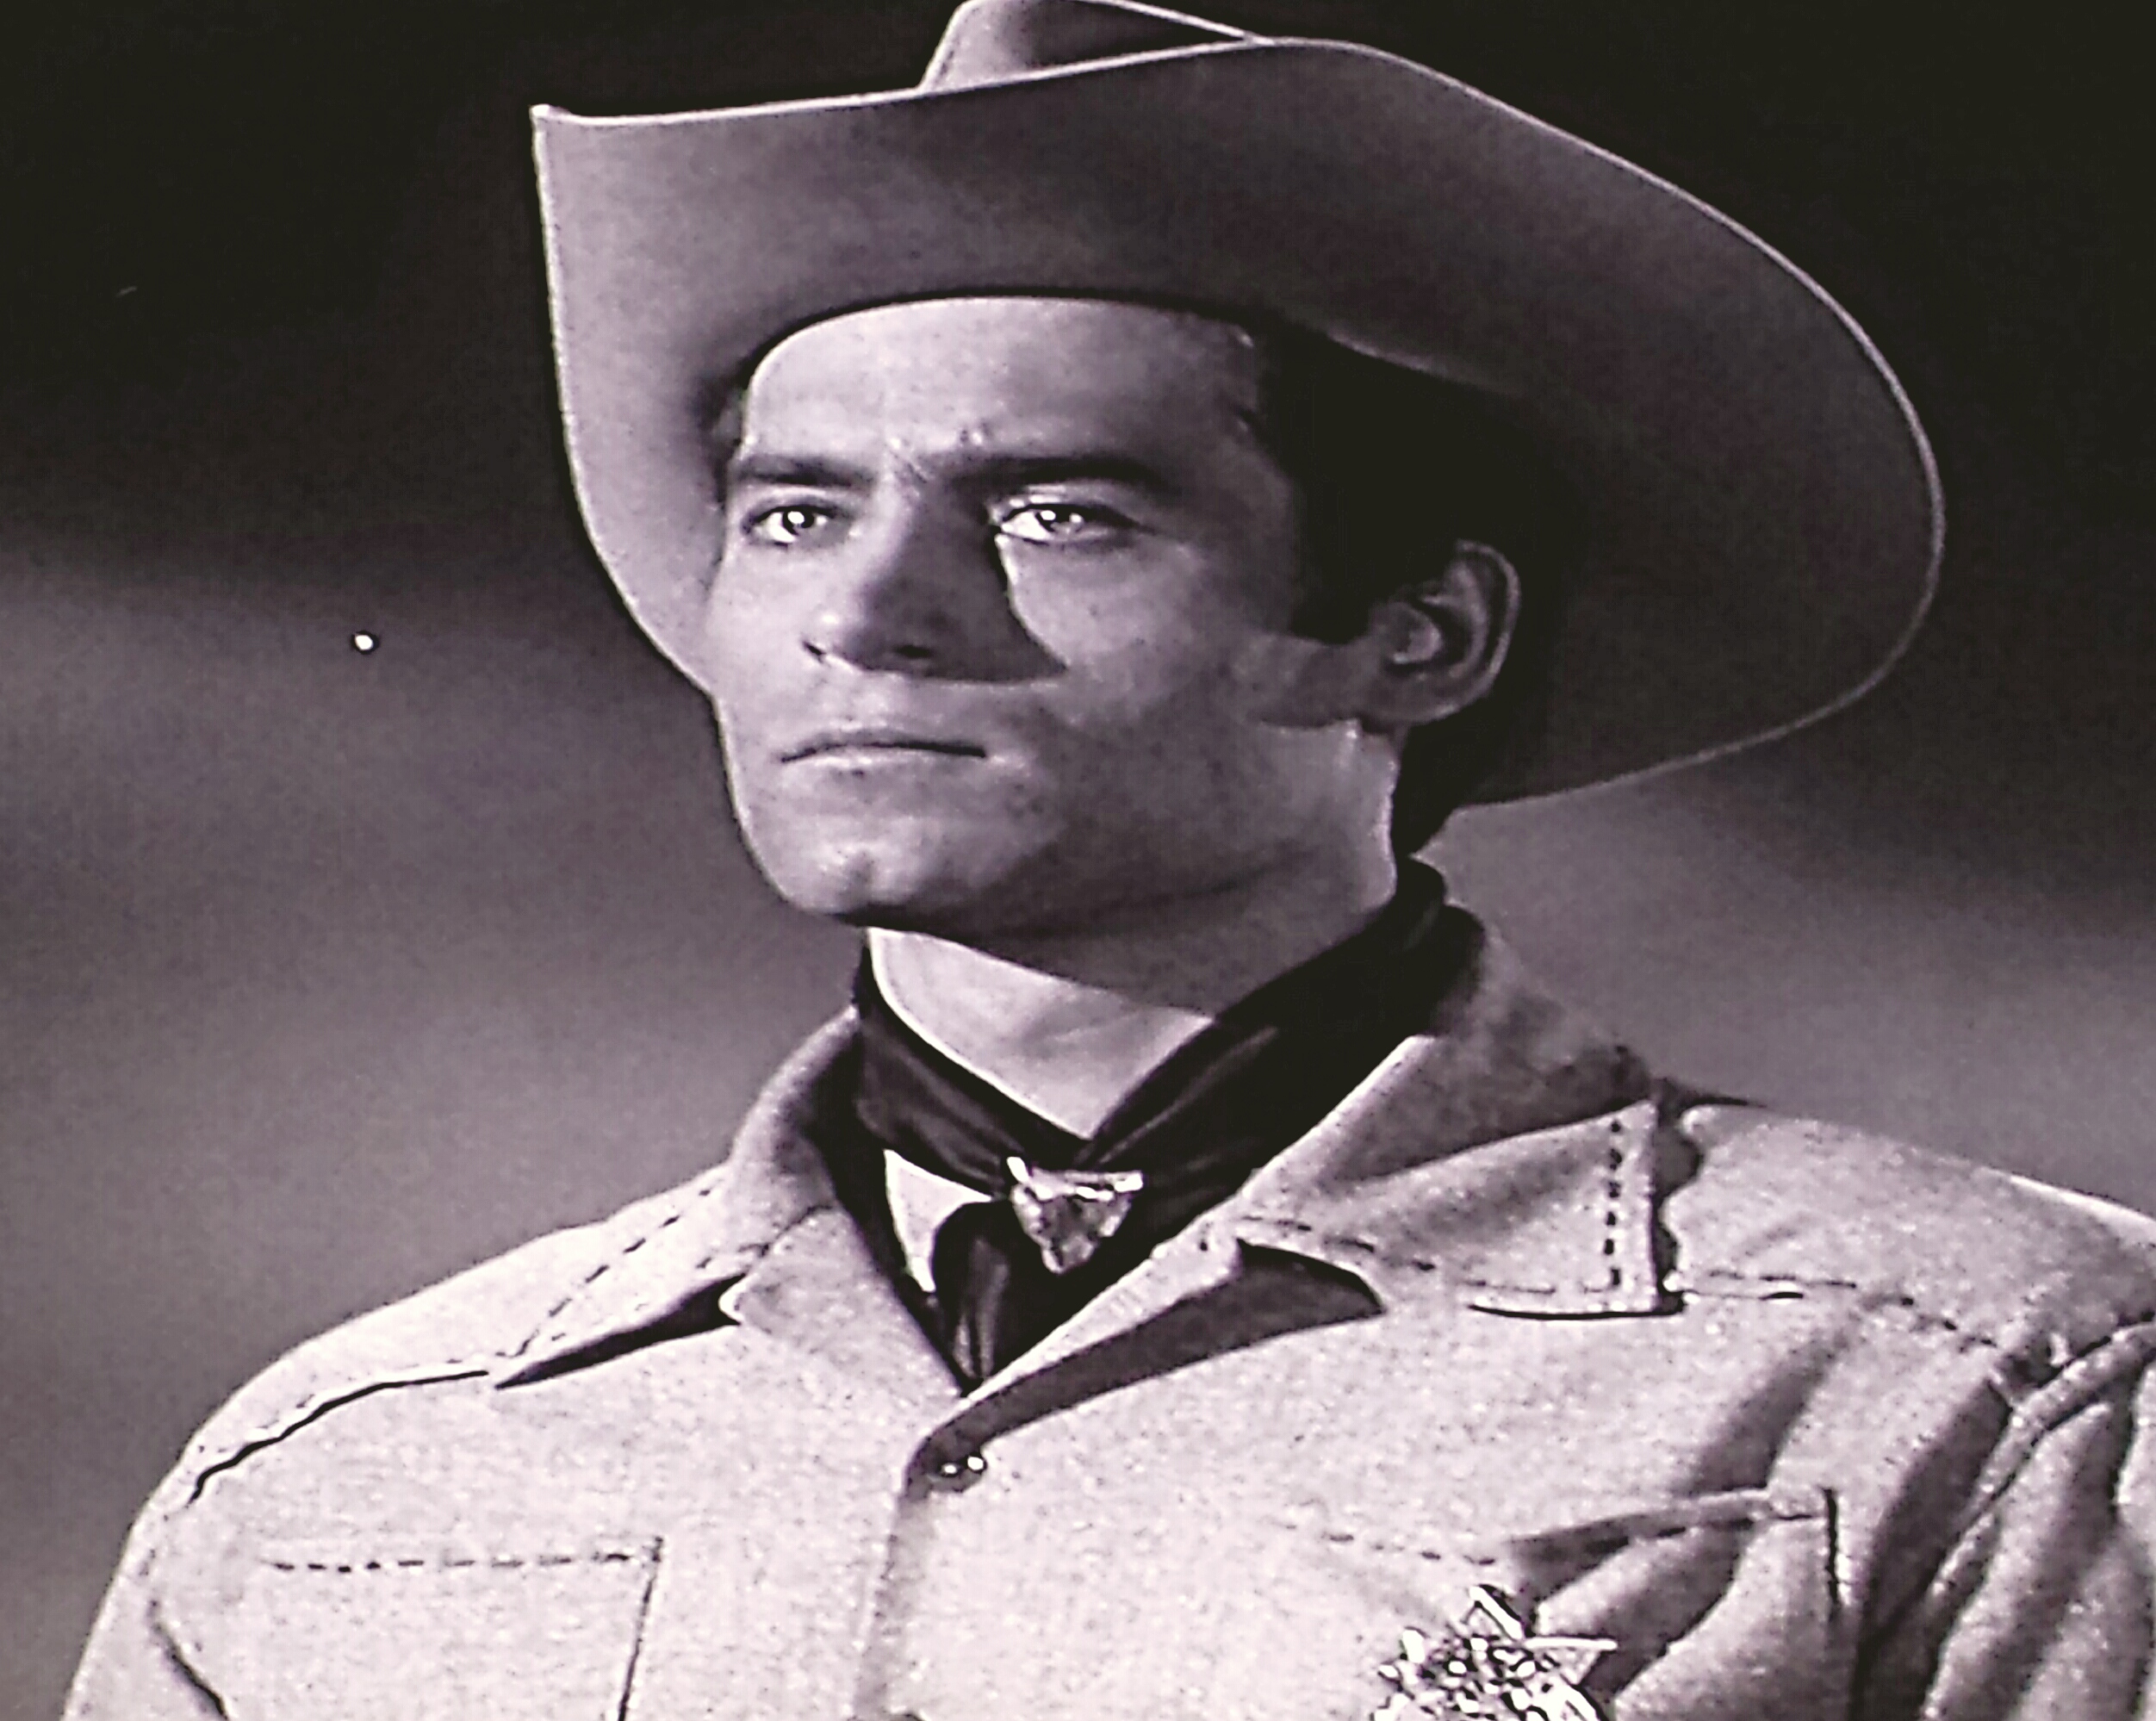 Clint Walker in Cheyenne (1955)